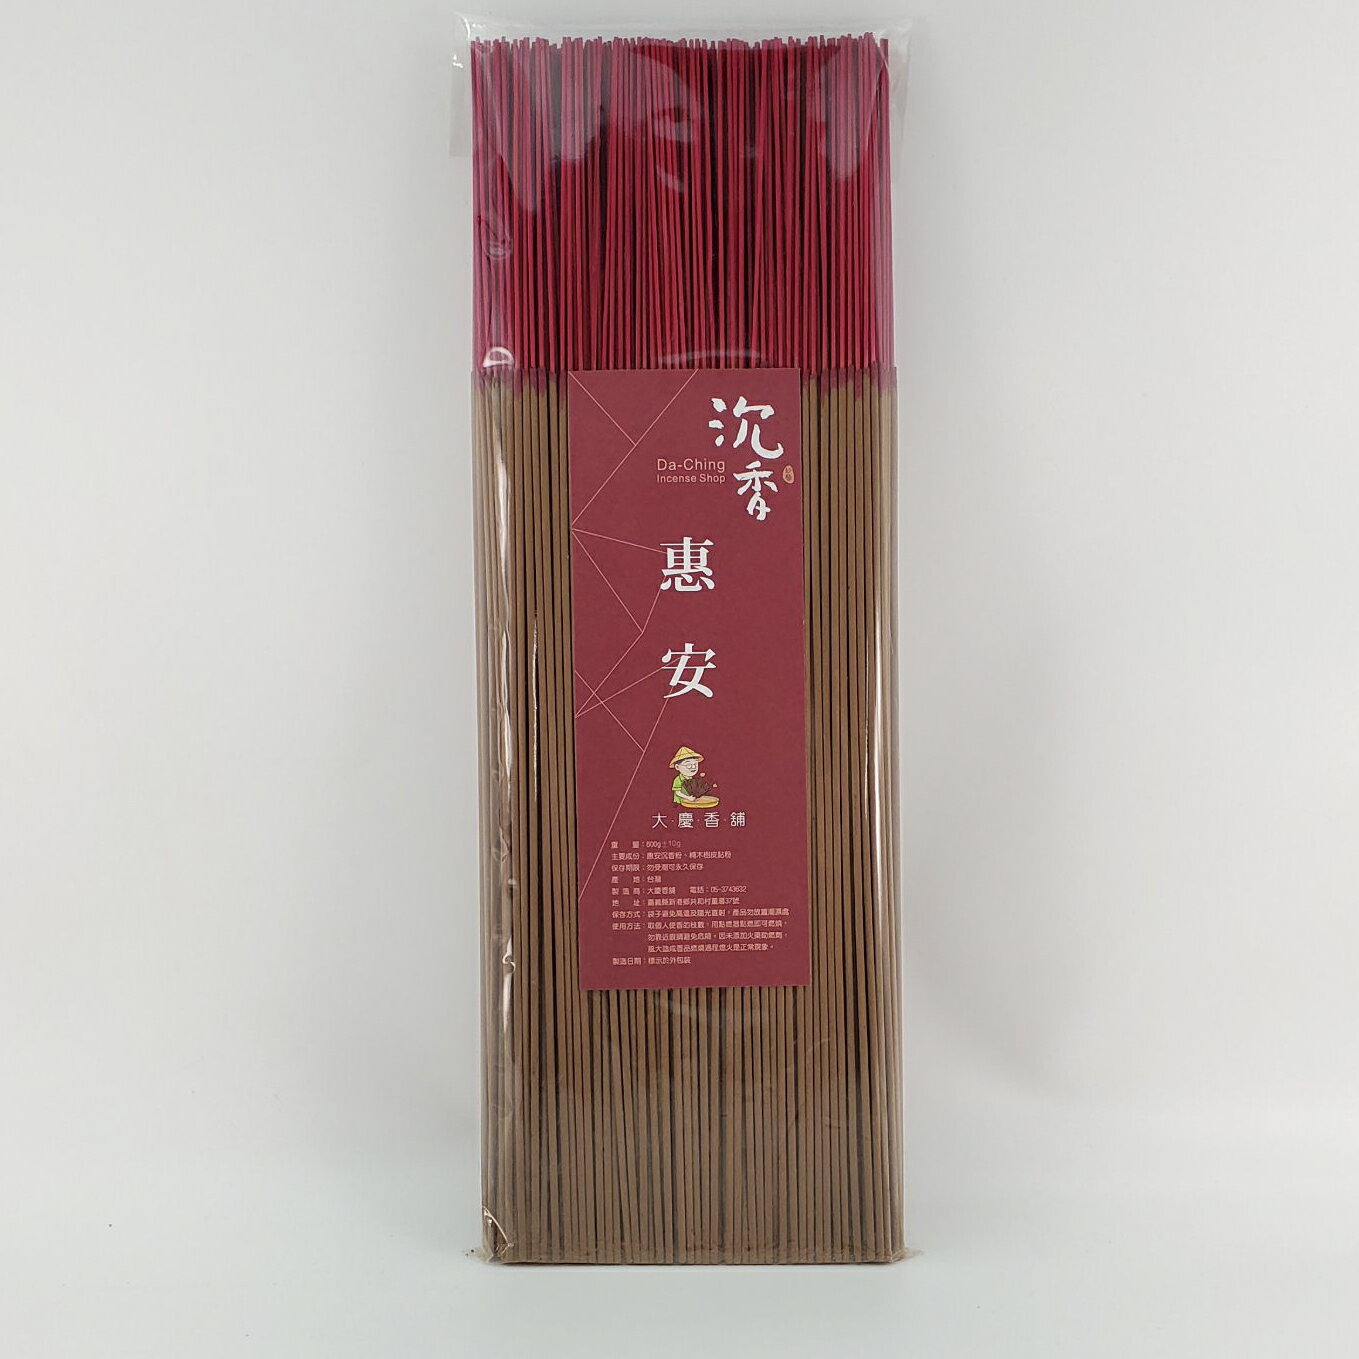 立香 沉香類 惠安沉香 (一尺三)台灣製造 天然 安全 環保